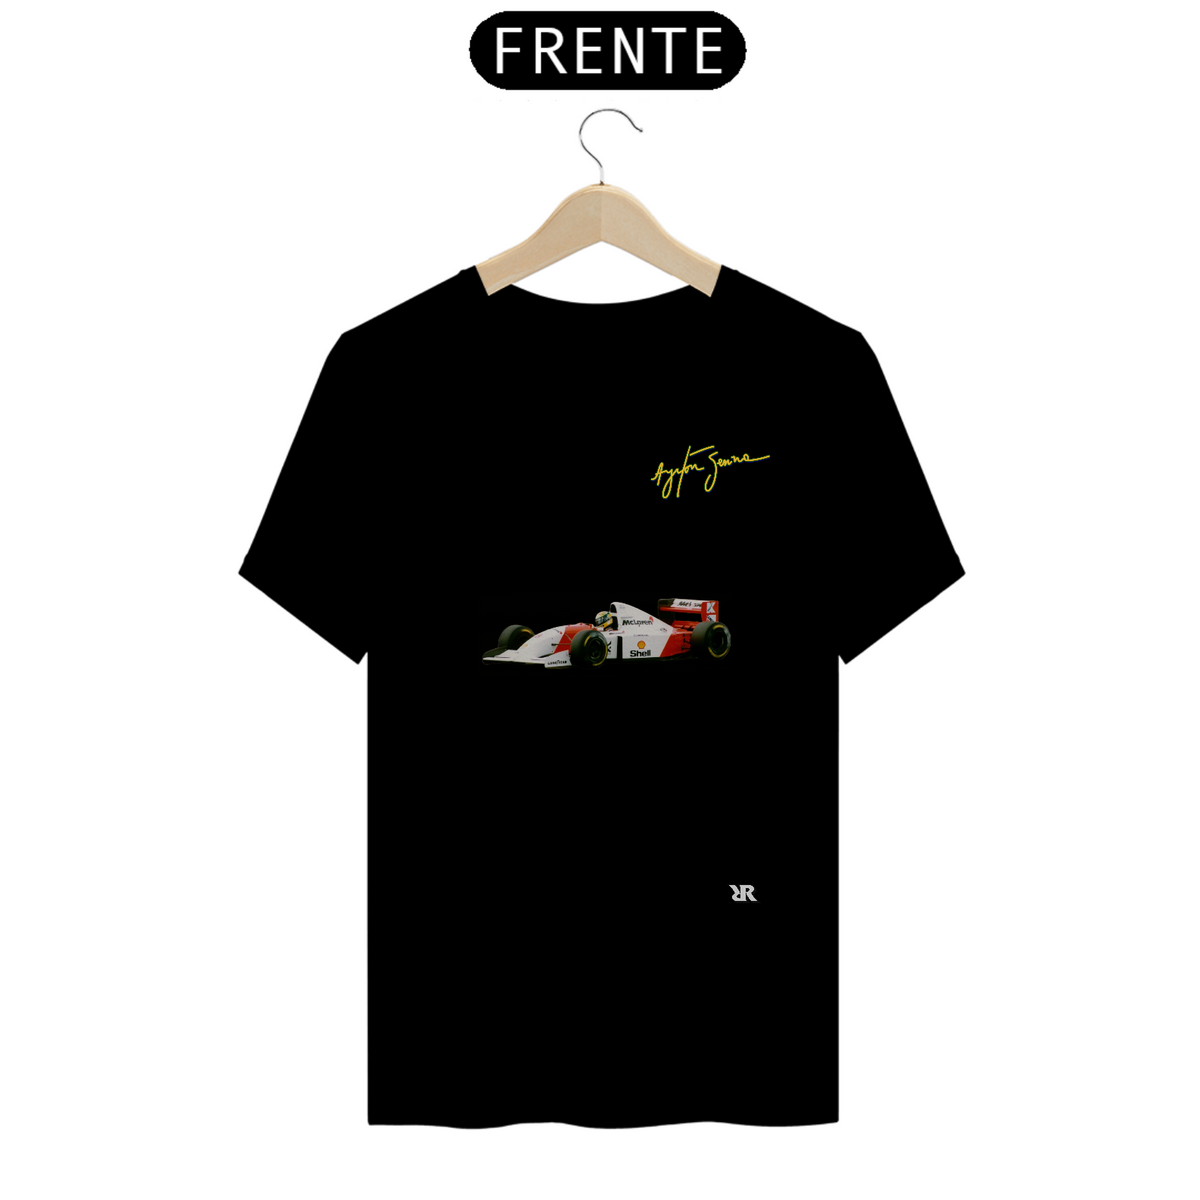 Nome do produto: Senna v2